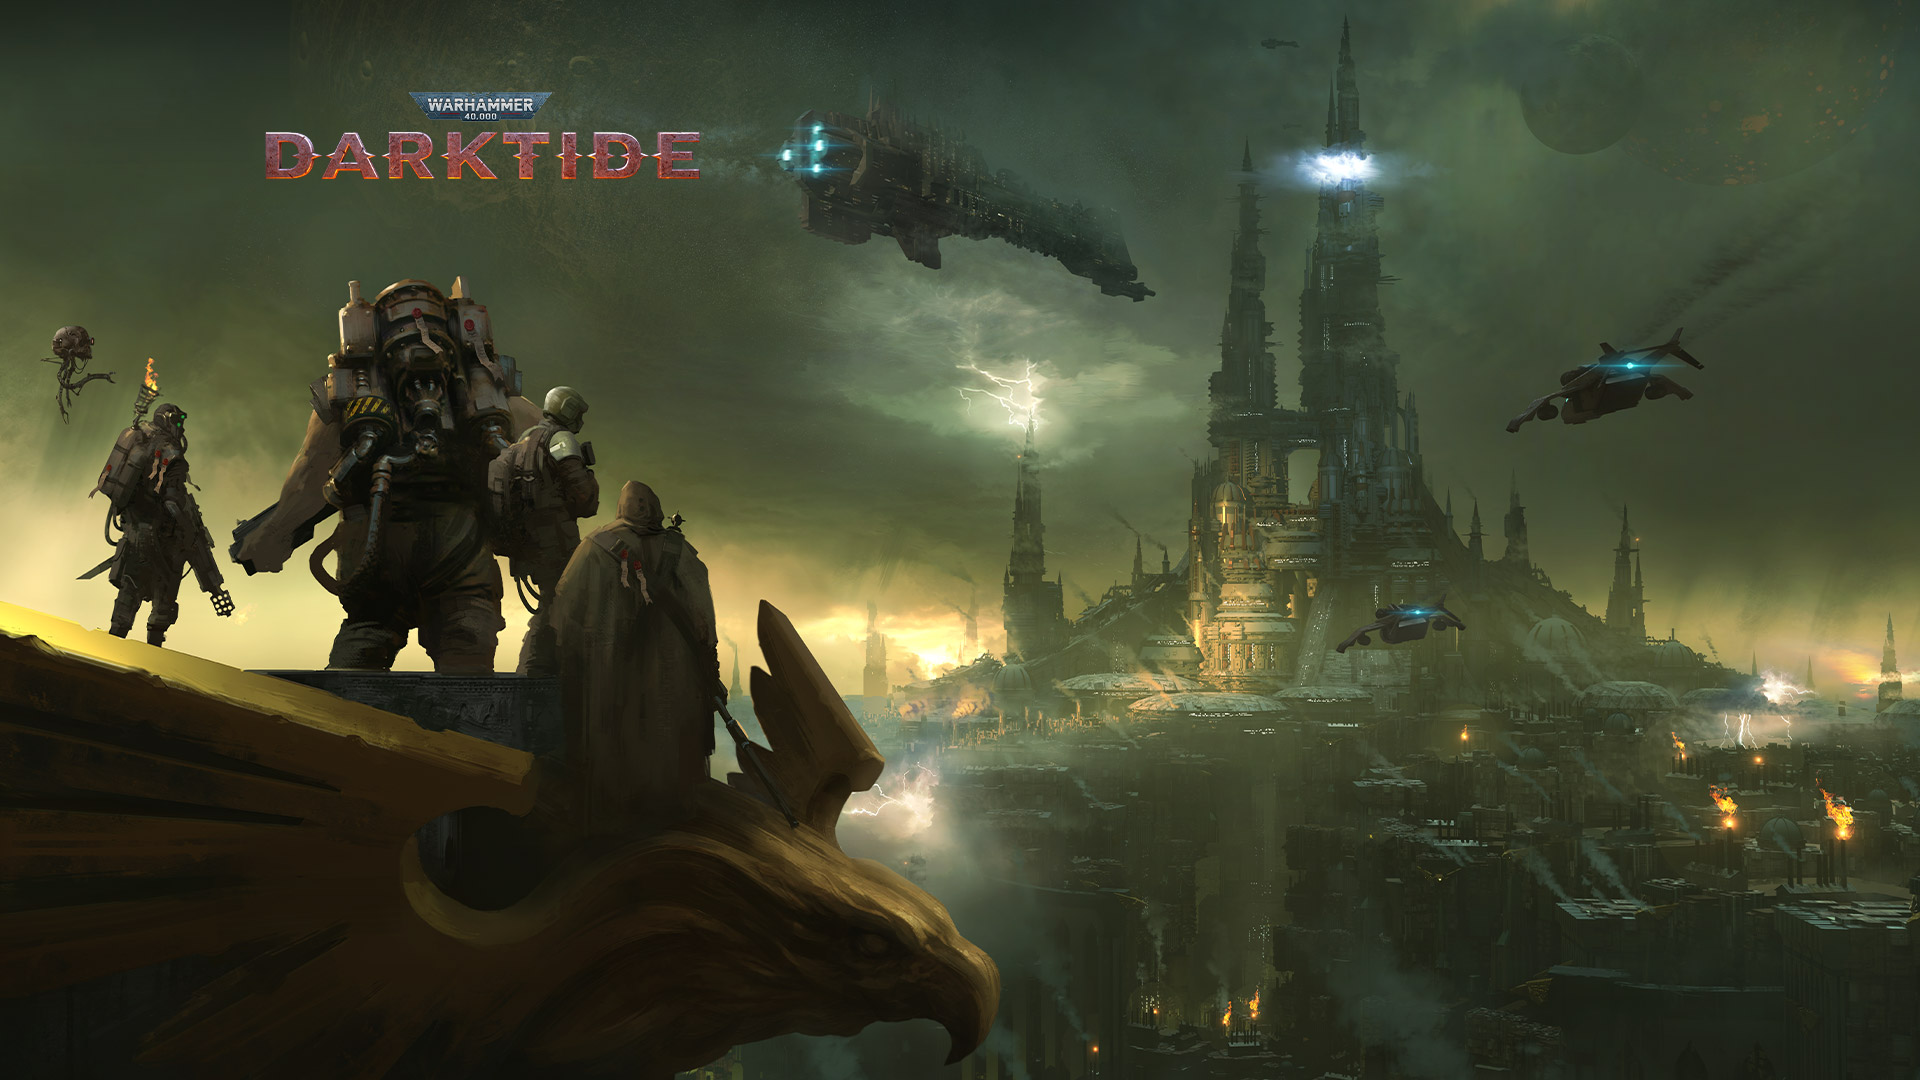 Warhammer 40,000 Darktide, קבוצת דמויות משקיפה על עיר אפופה בערפל